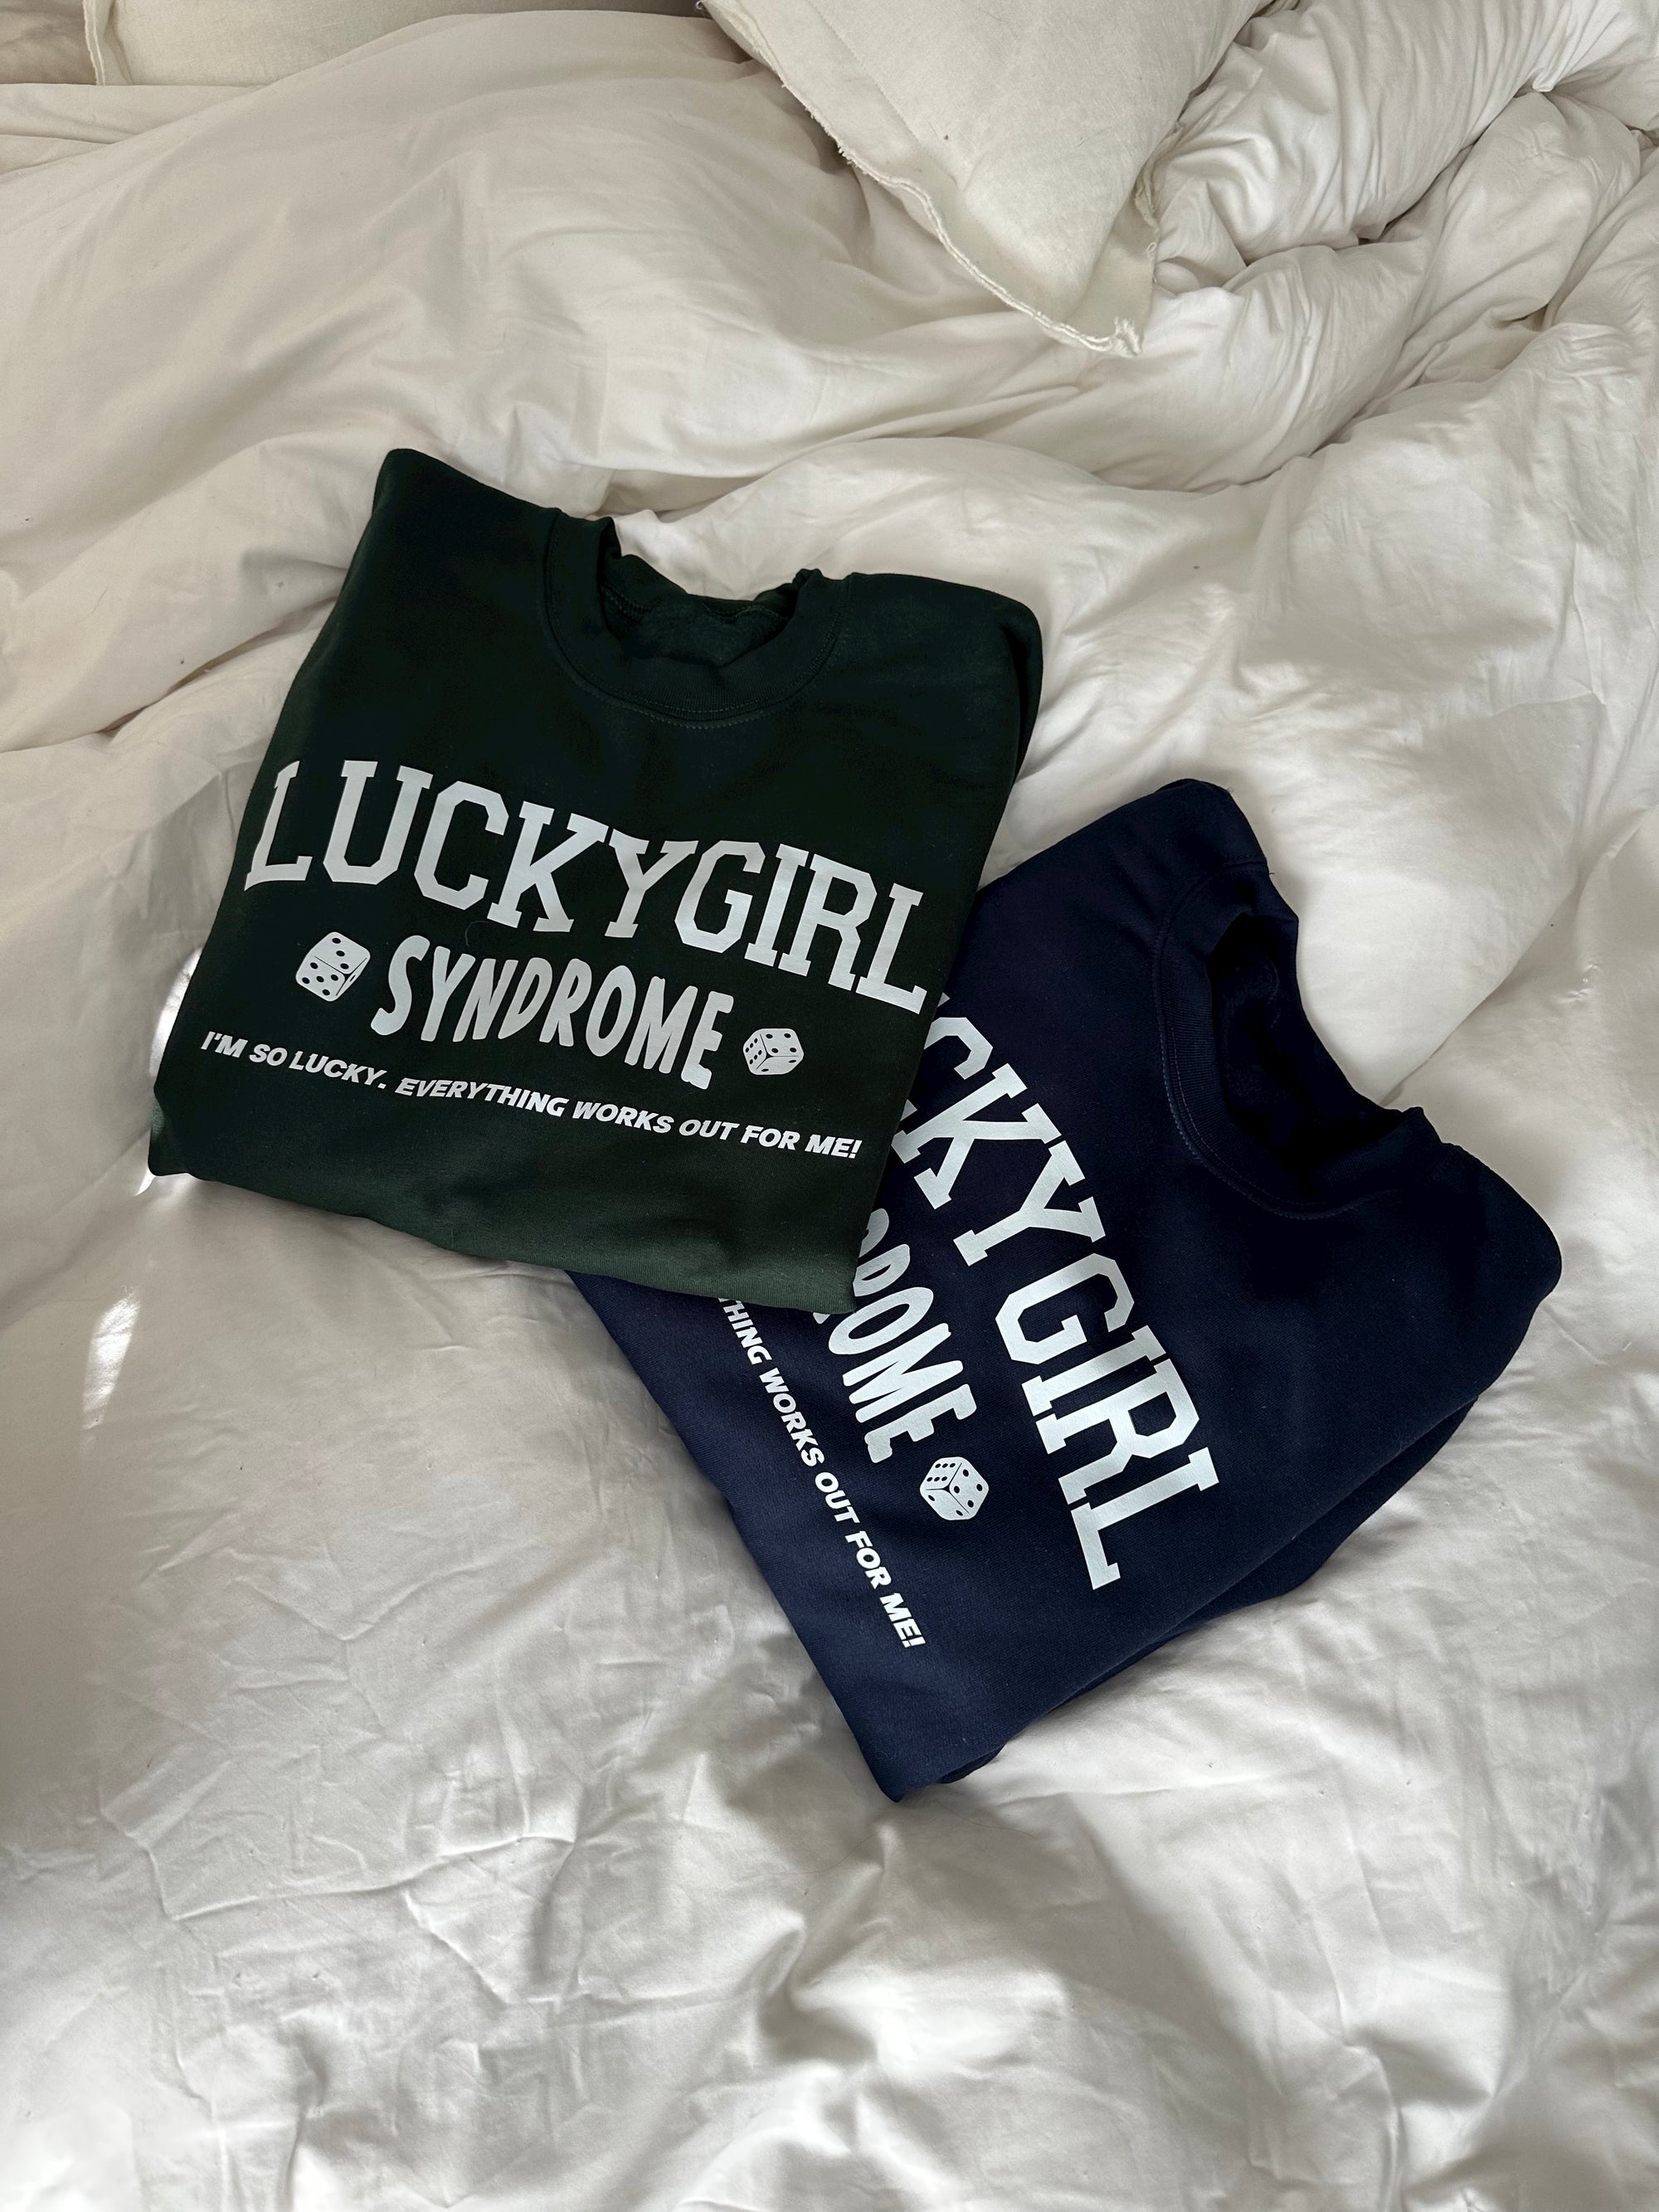 Green Lucky Girl Syndrome Crewneck